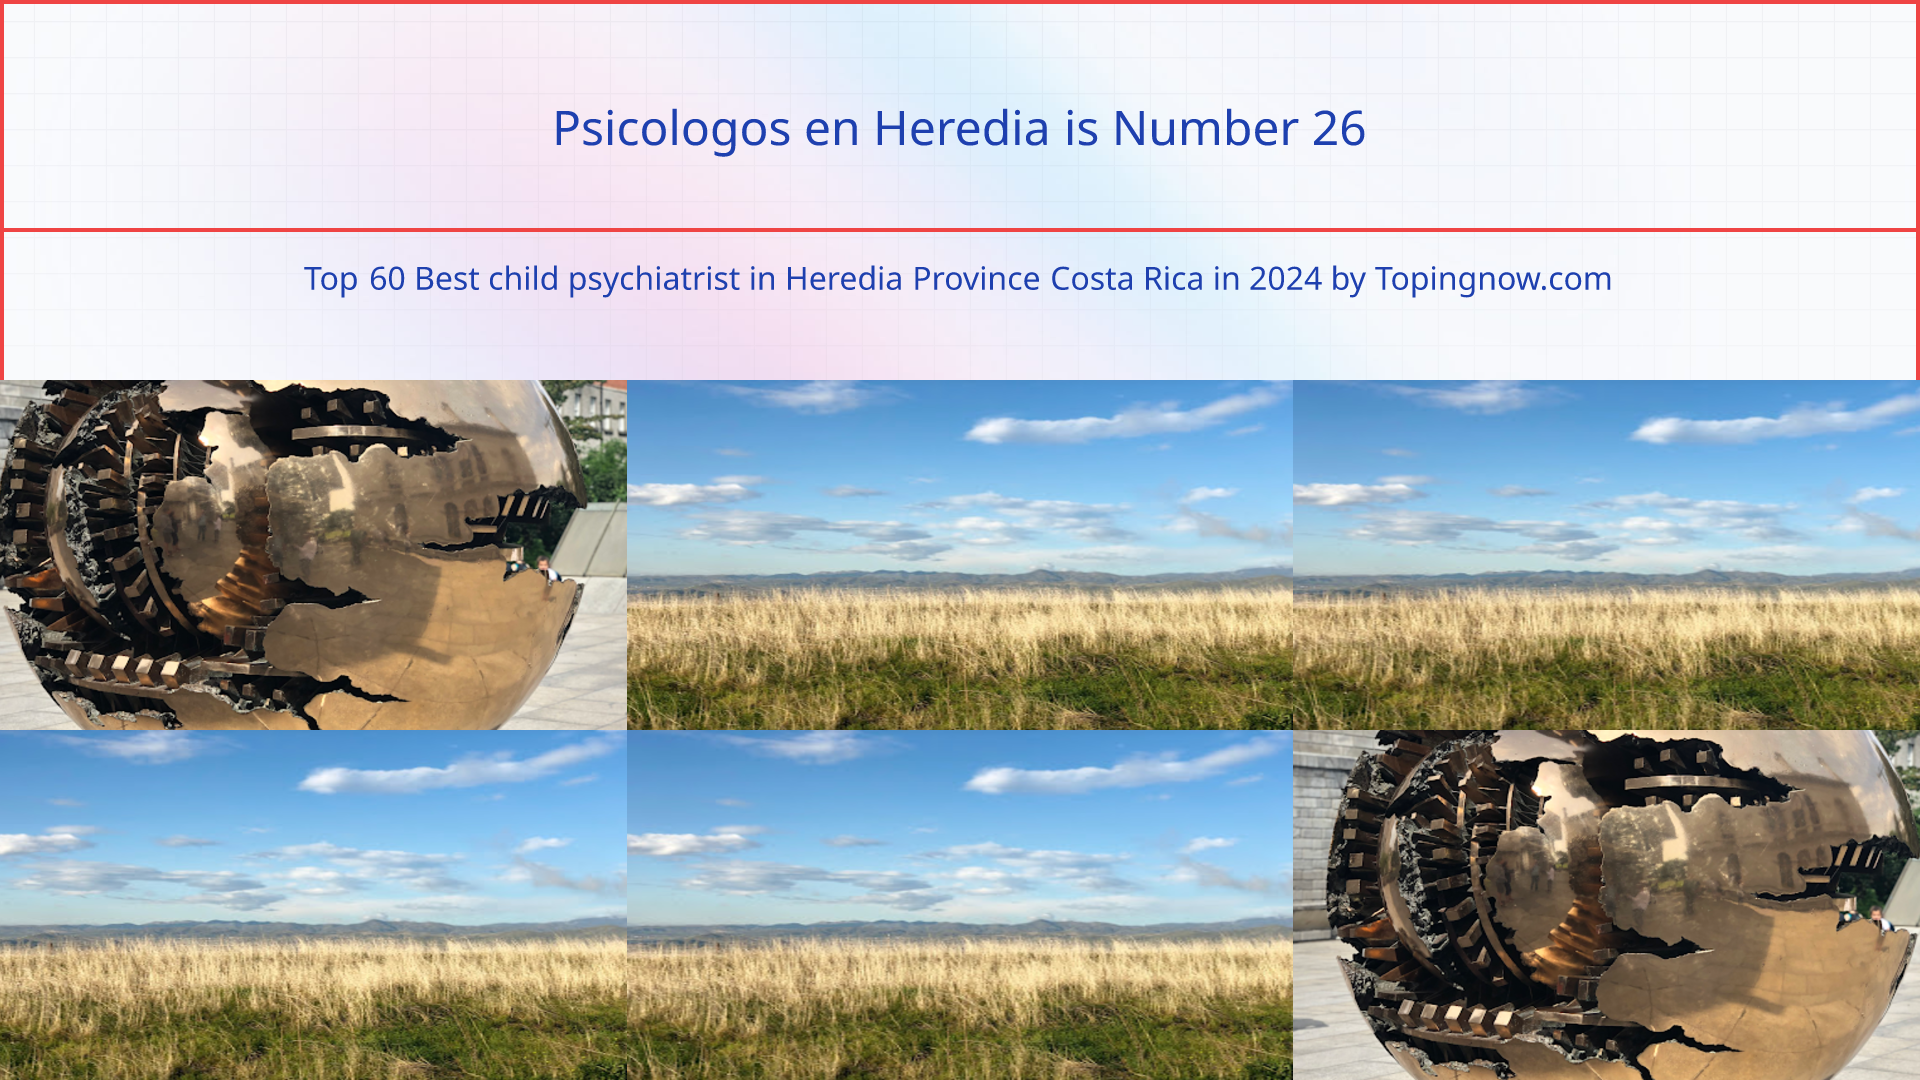 Psicologos en Heredia: Top 60 Best child psychiatrist in Heredia Province Costa Rica in 2024